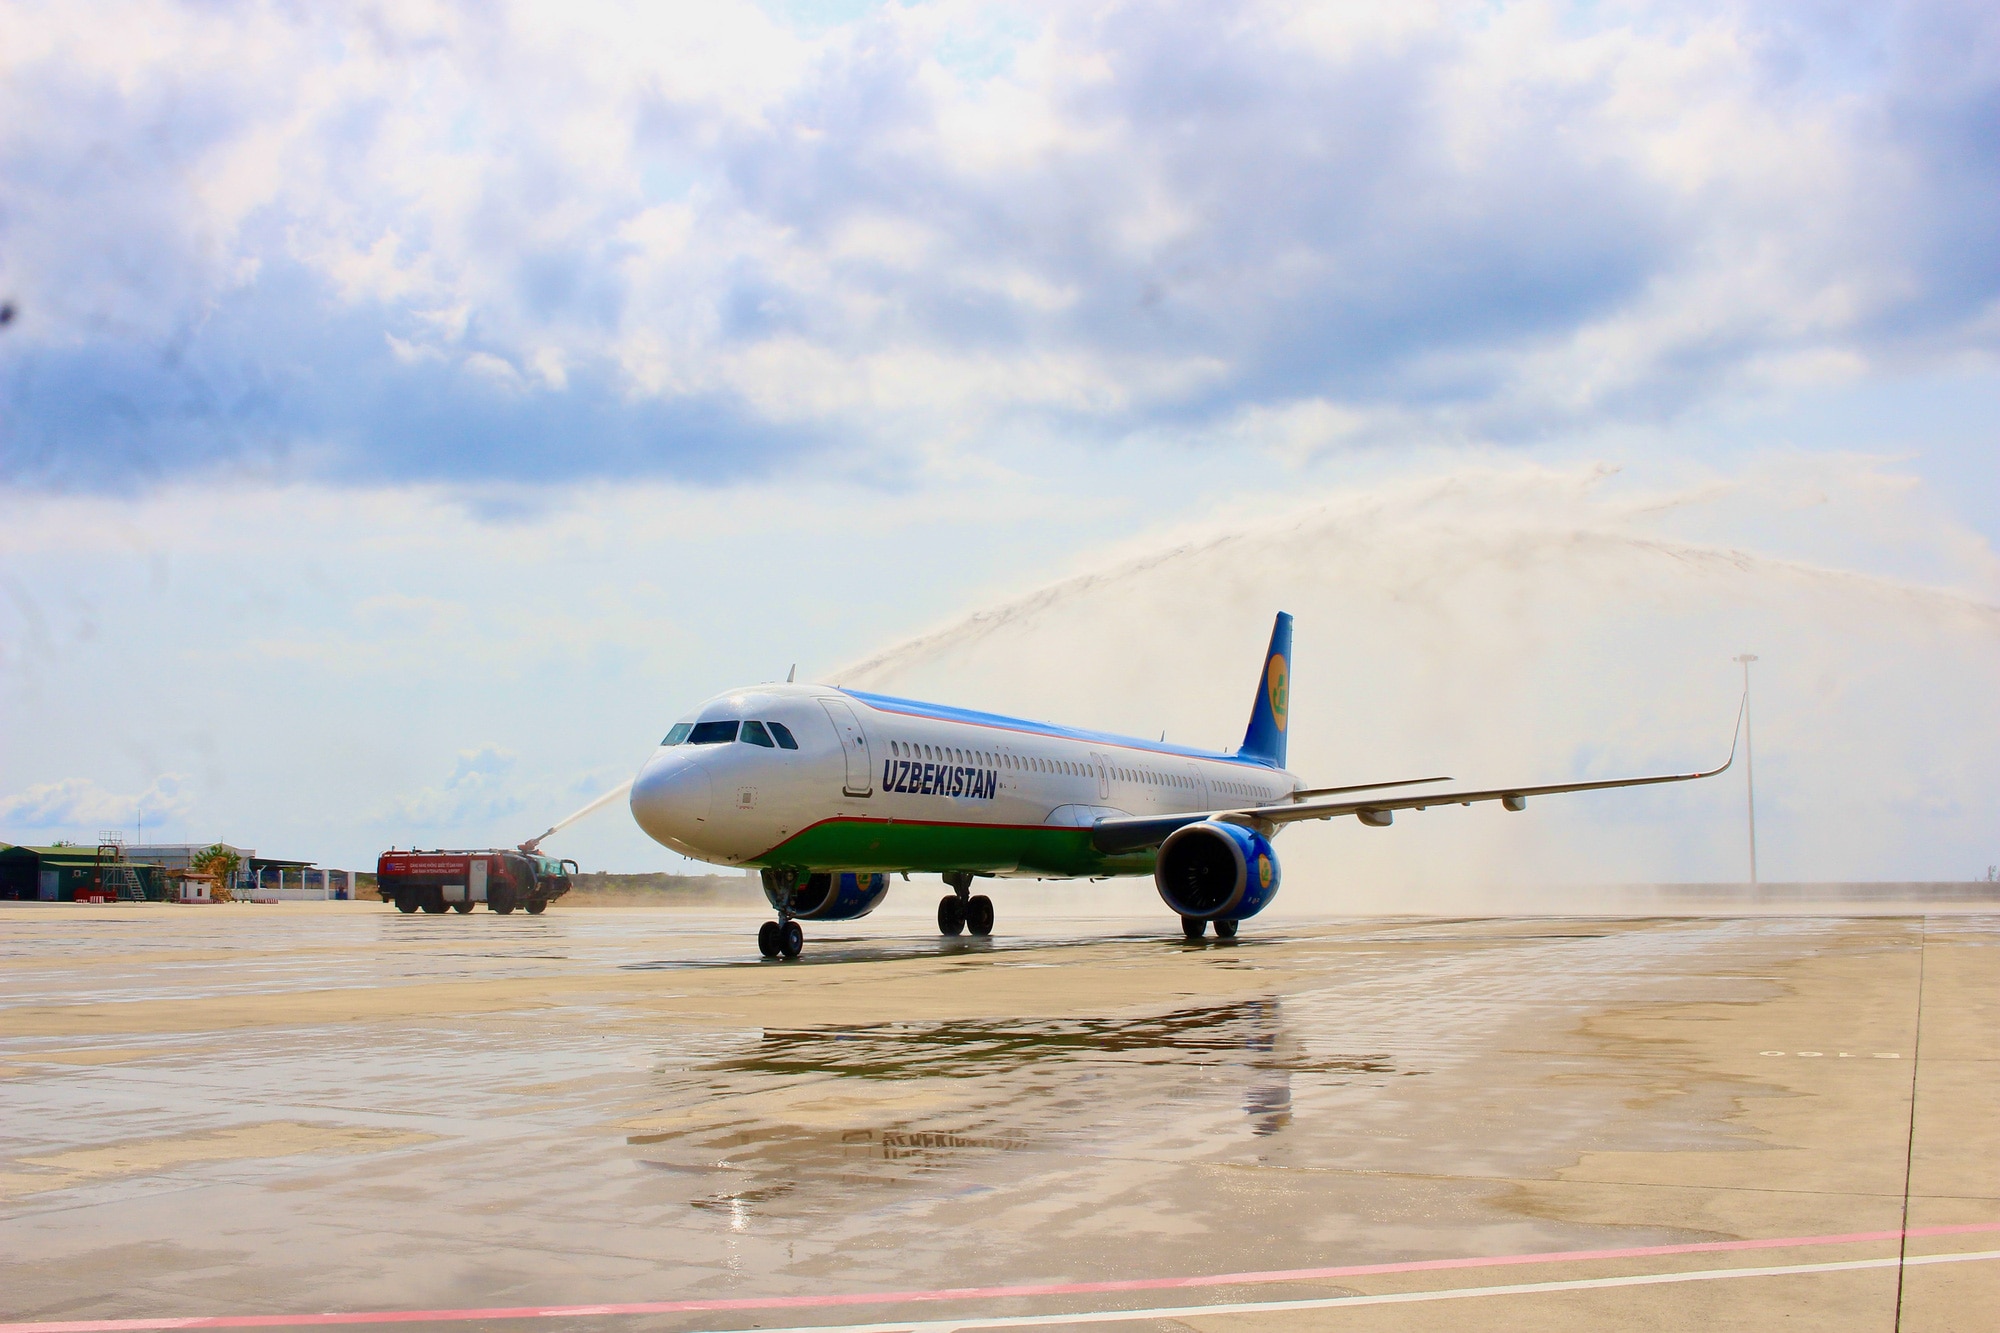 Nghi thức phun vòi rồng chào đón phi cơ hạ cánh xuống sân bay quốc tế Cam Ranh - Ảnh: MINH CHIẾN